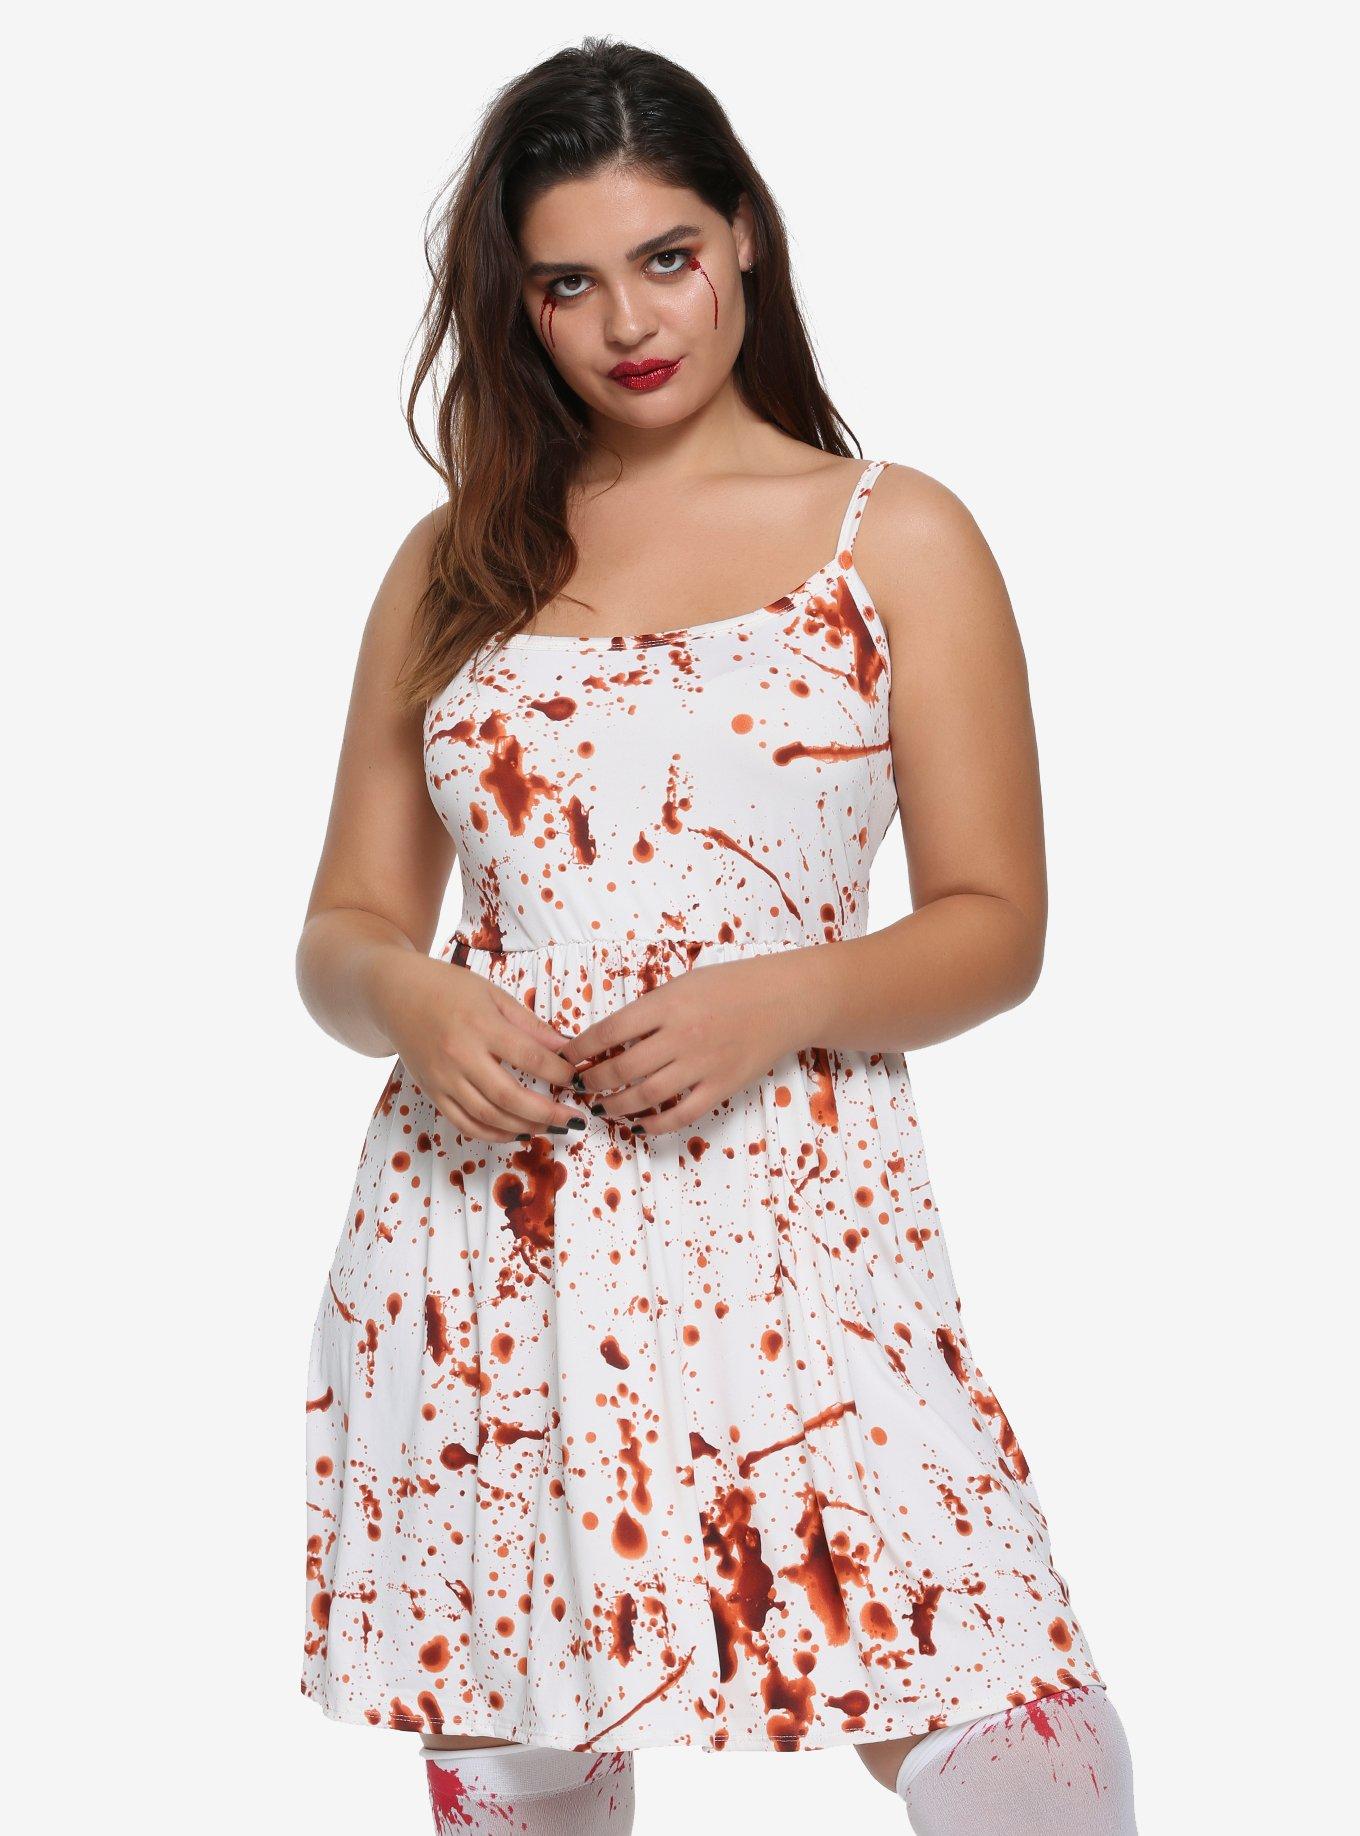 Blood Splatter Dress Plus Size, RED, hi-res